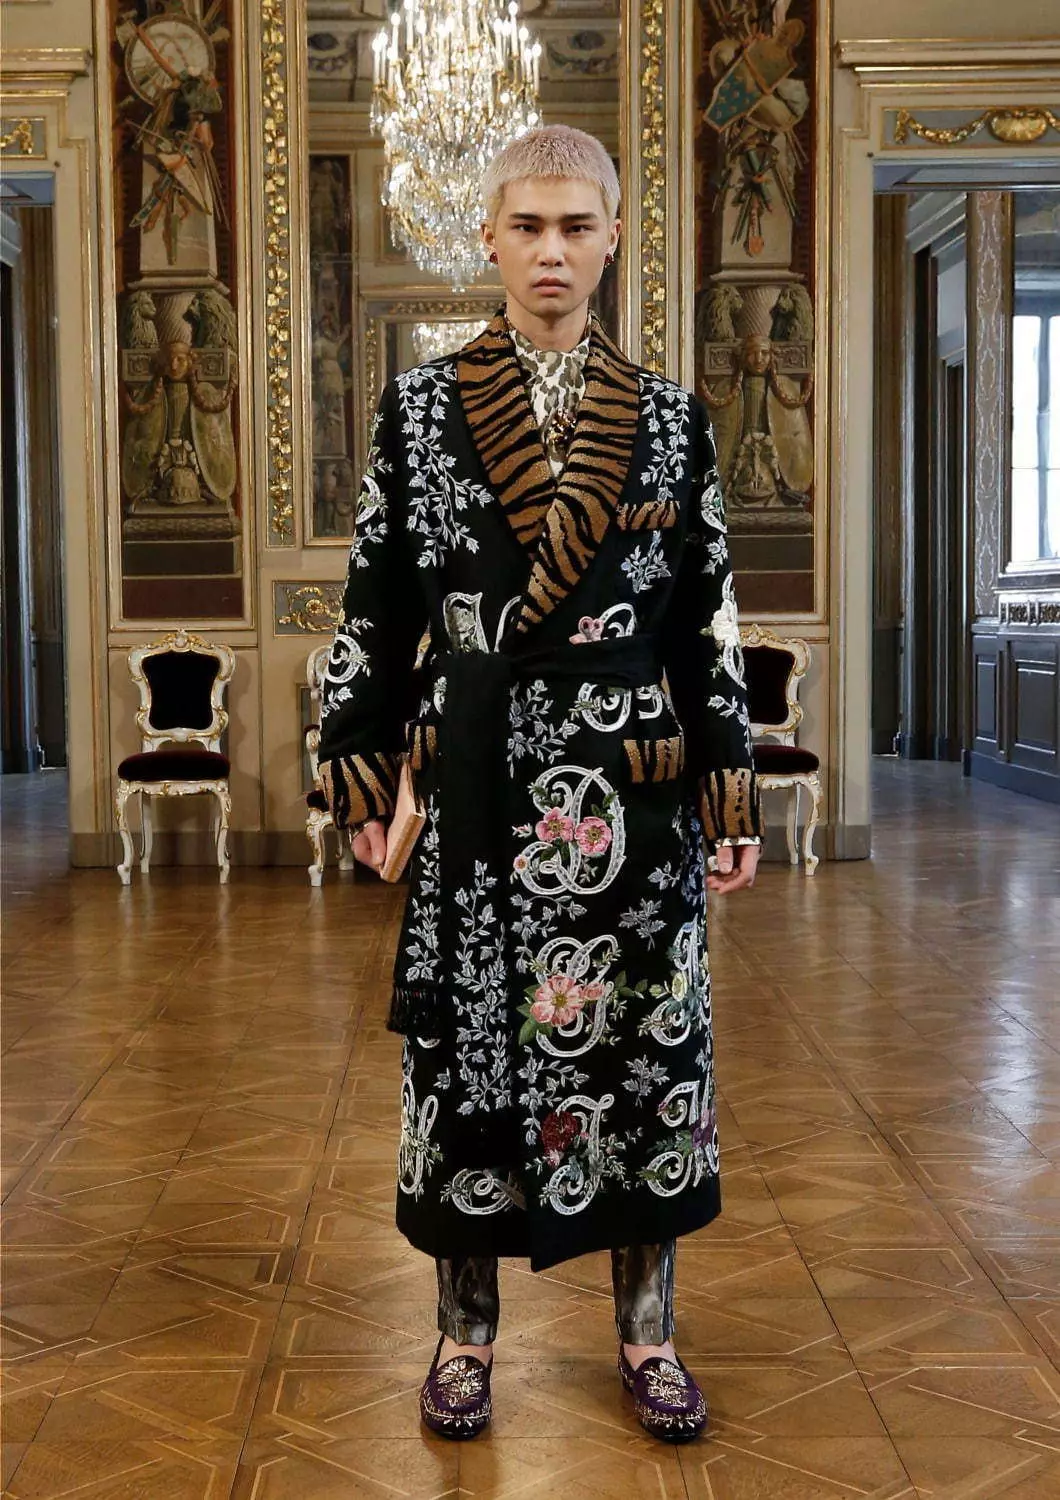 Colección Dolce & Gabbana Alta Sartoria Menswear Julio 2020 53602_51